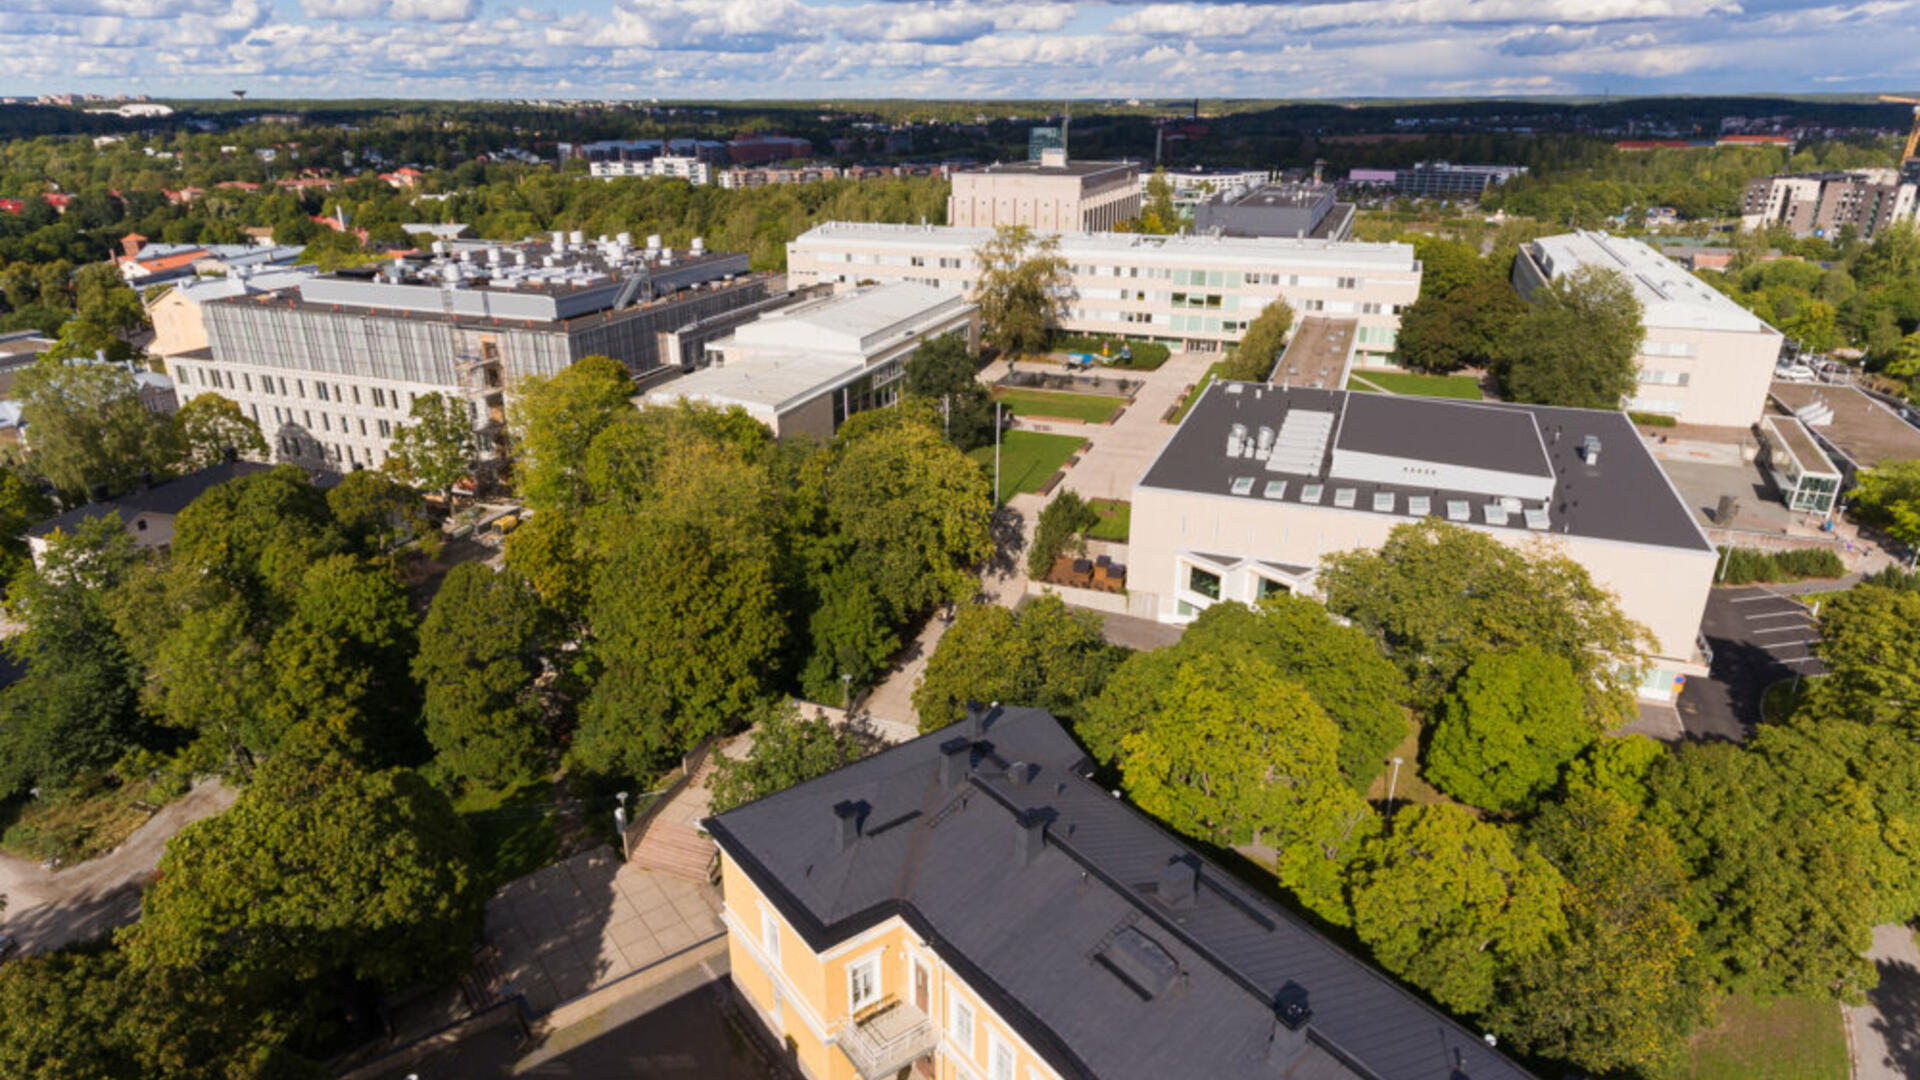 Turun yliopistonmäen rakennusten kattoja, välissä puita, taivas on pilvinen.